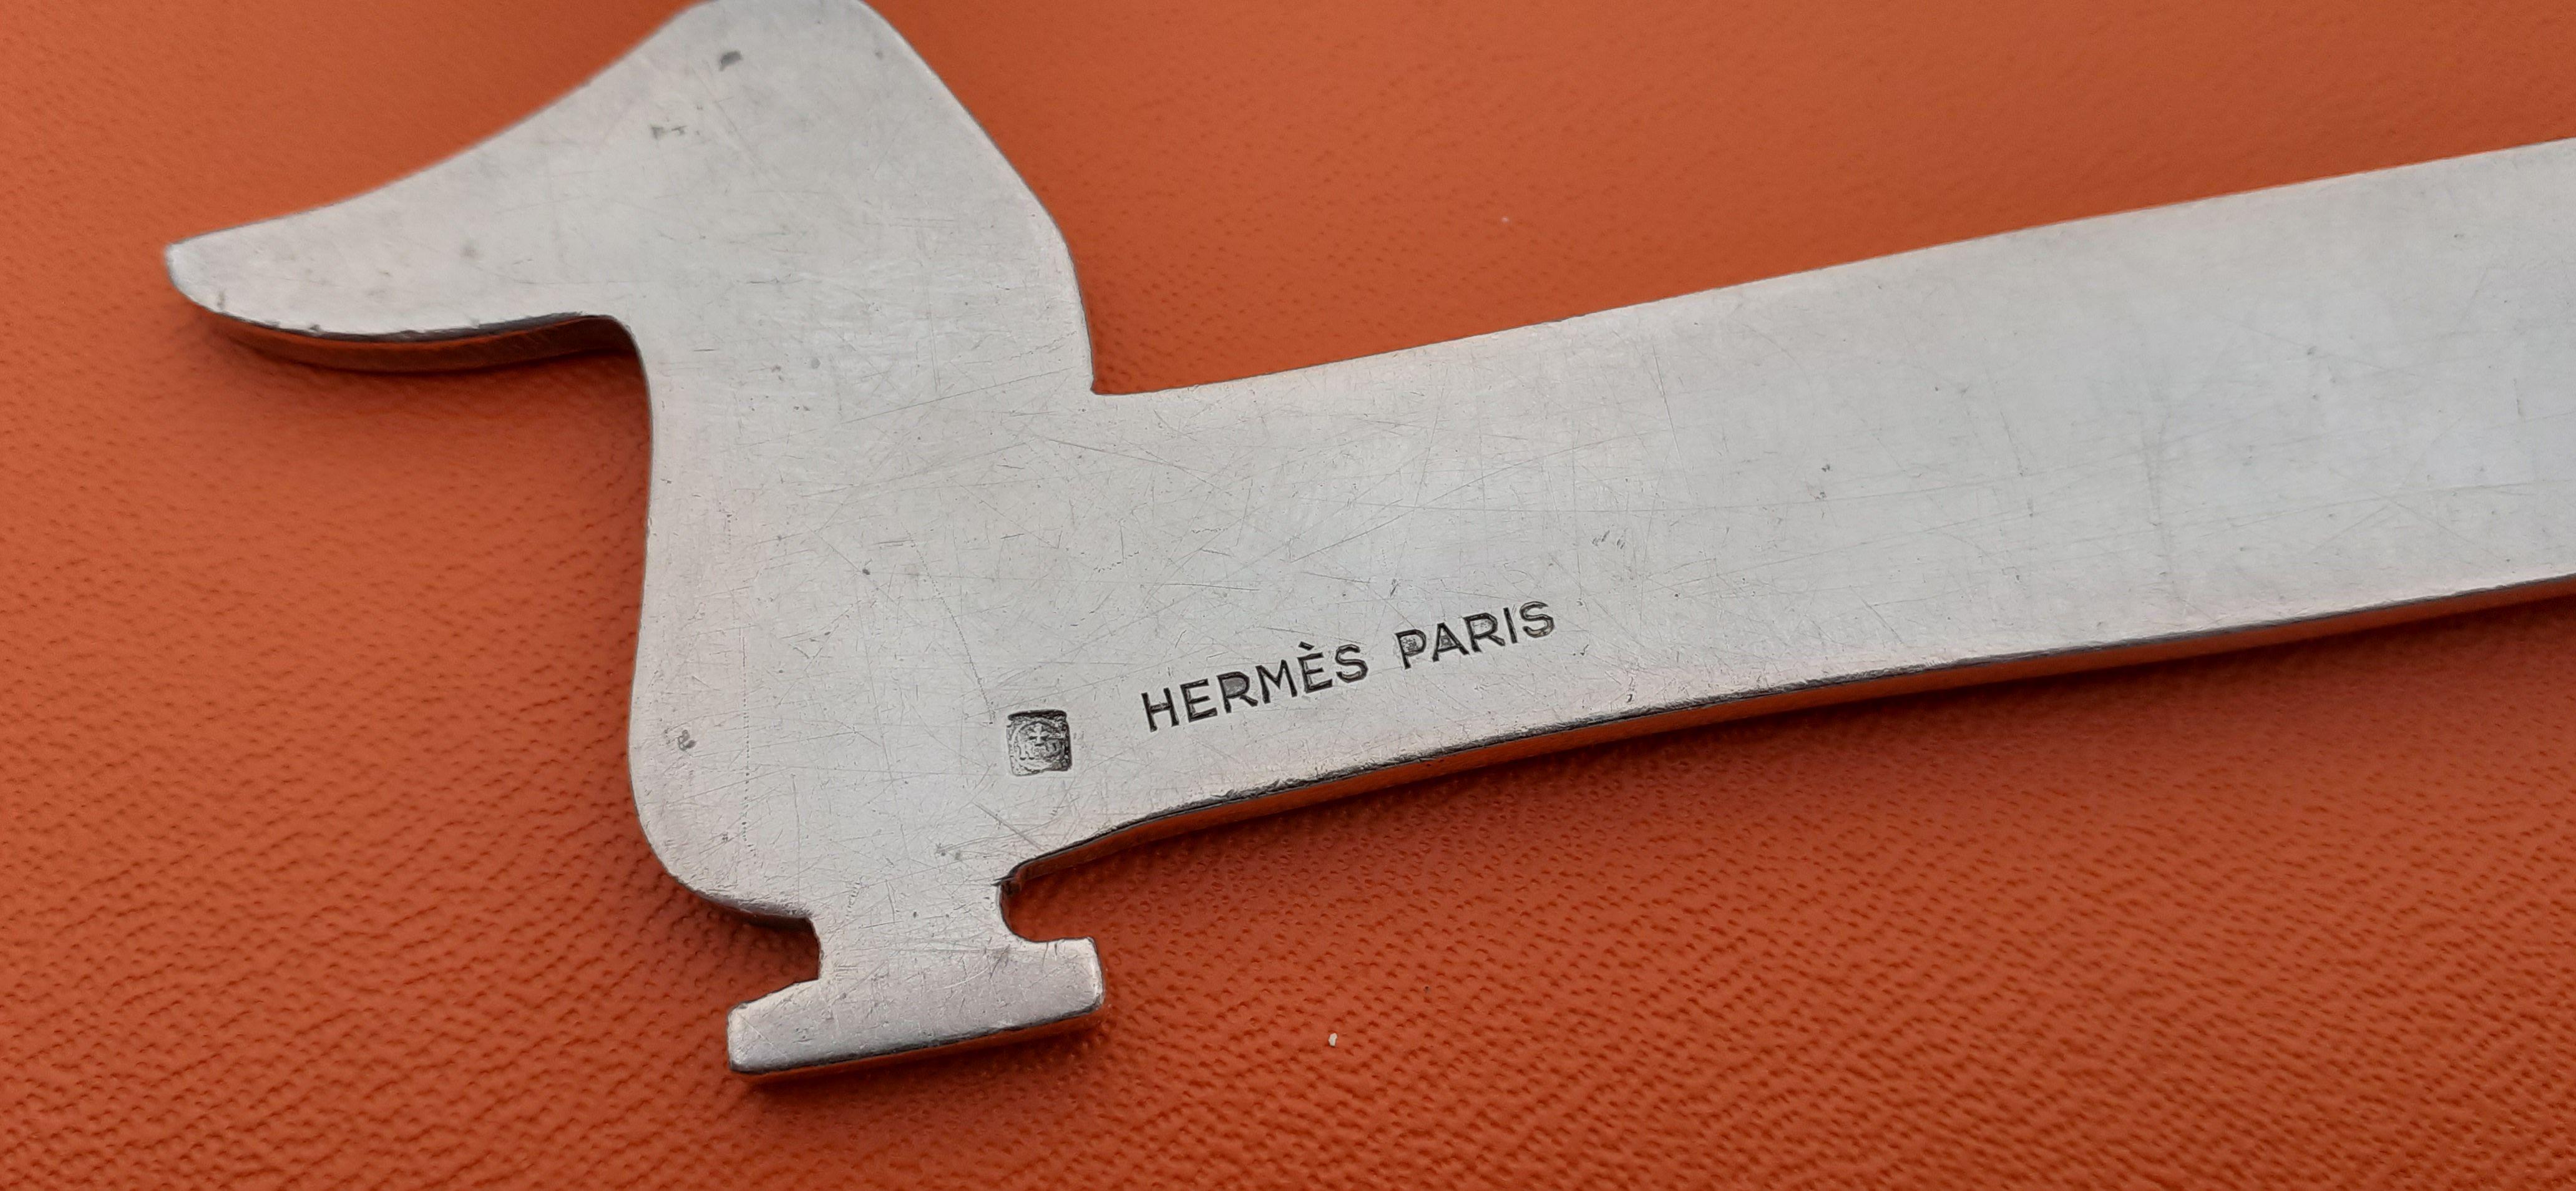 Hermès Vintage Teckel Dachshund Dog Shaped Letter Opener by Ravinet d'Enfert  For Sale 6